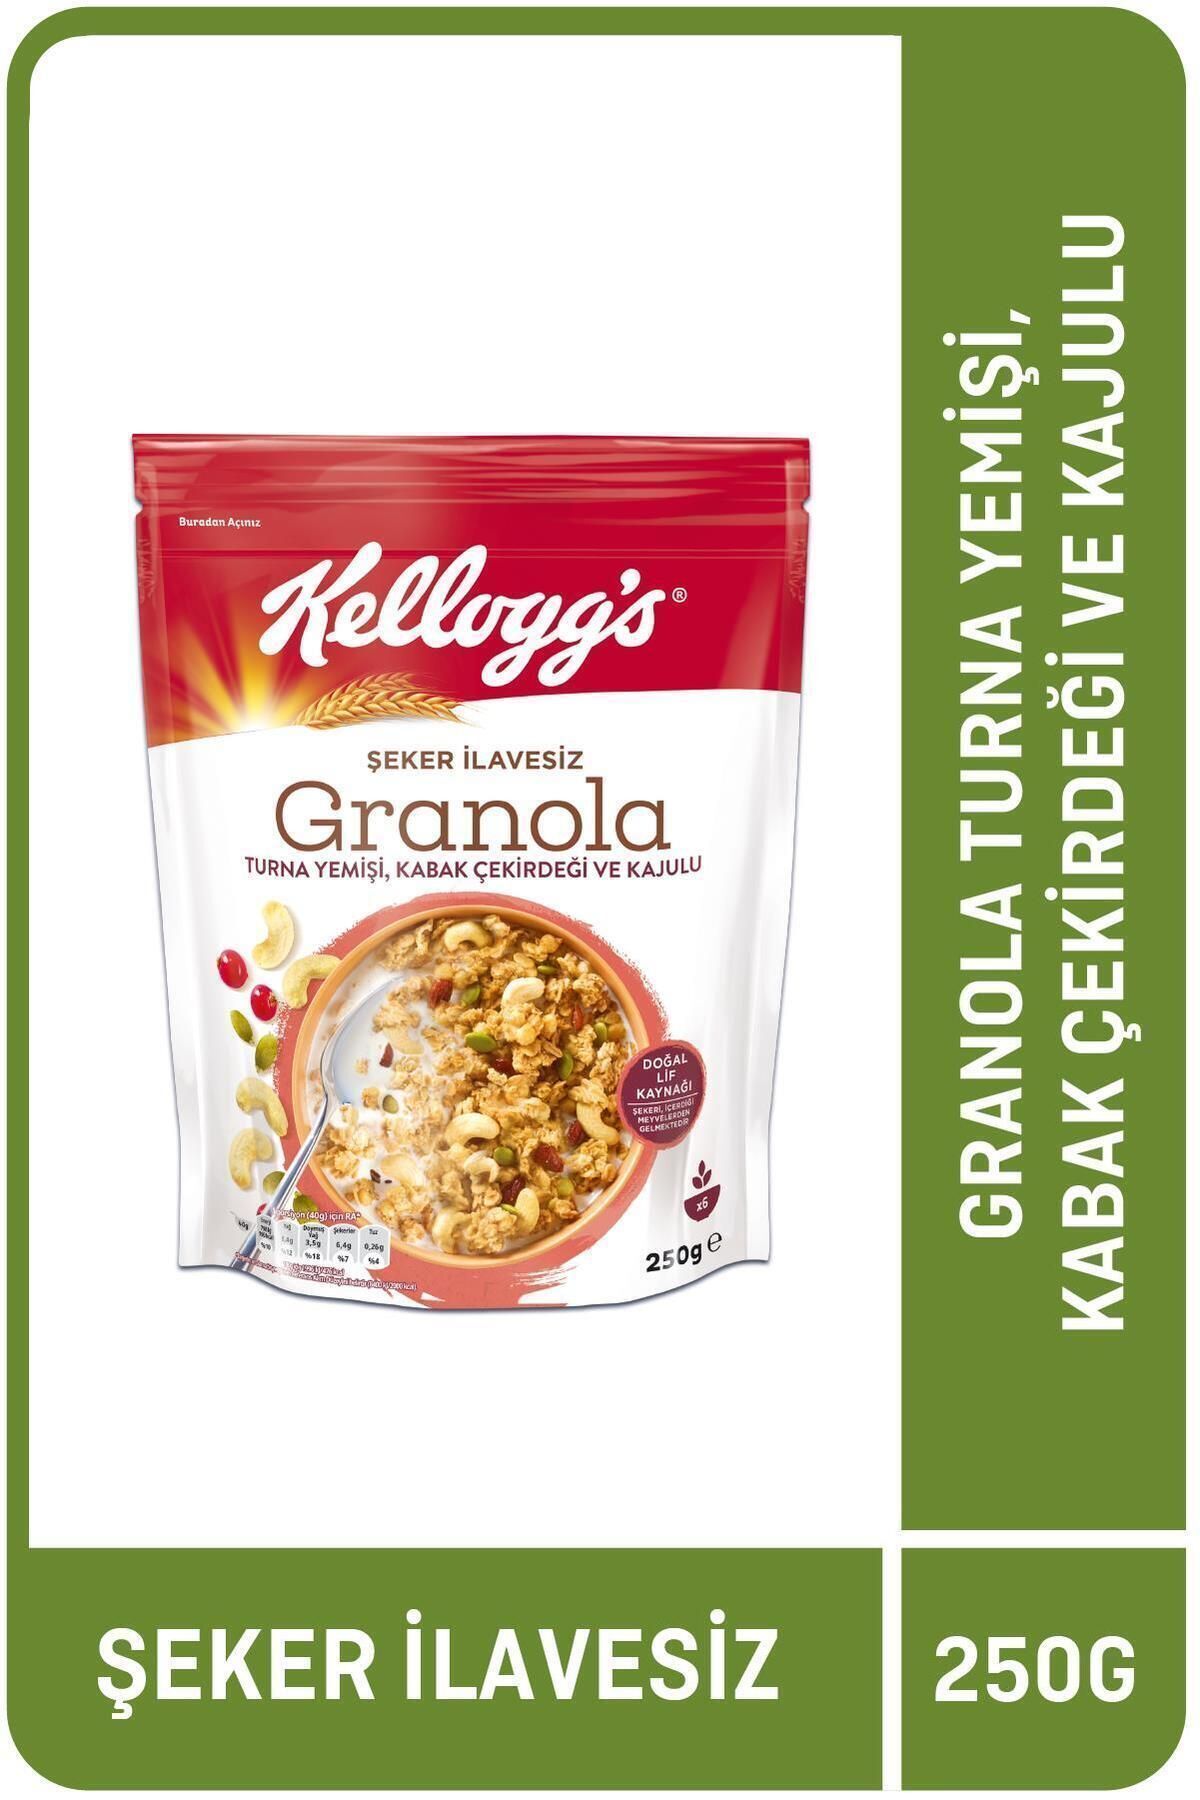 Kellogg's İlave Şekersiz Granola Turna Yemişi,kabak Çekirdeği Ve Kajulu 250 G,%42 Yulaf Içerir